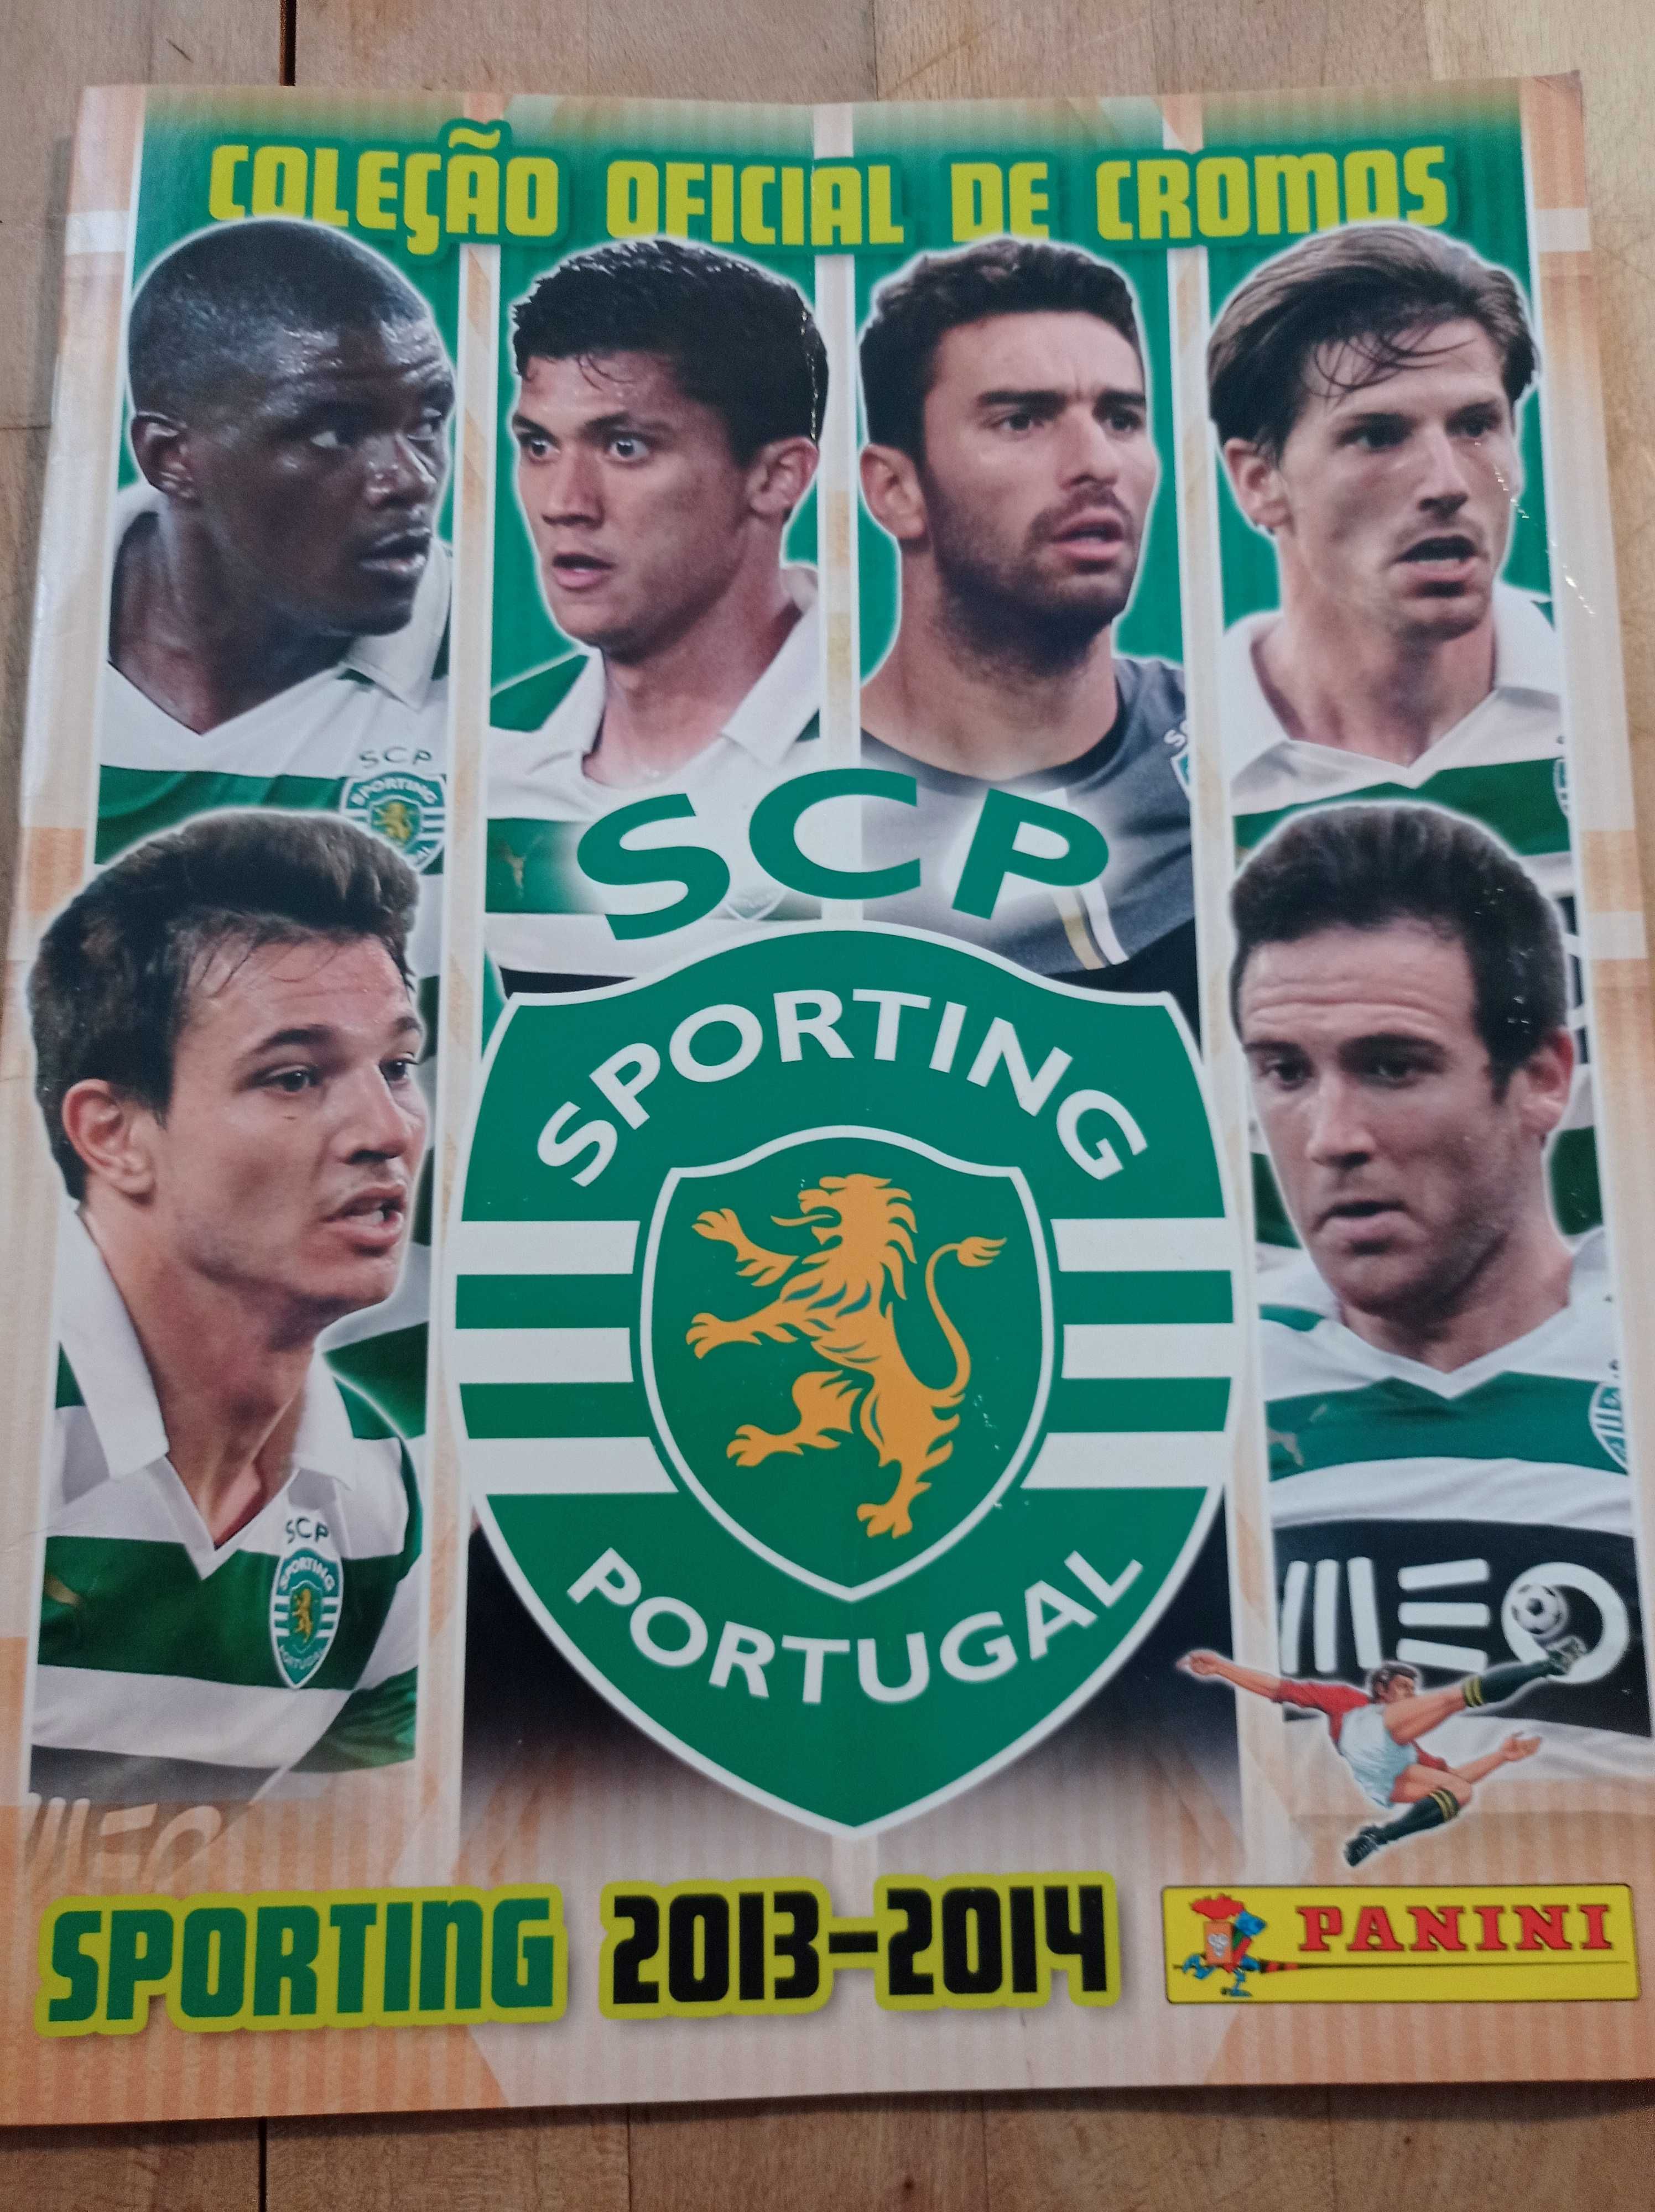 Sporting Clube de Portugal SCP - Lote ou item a item